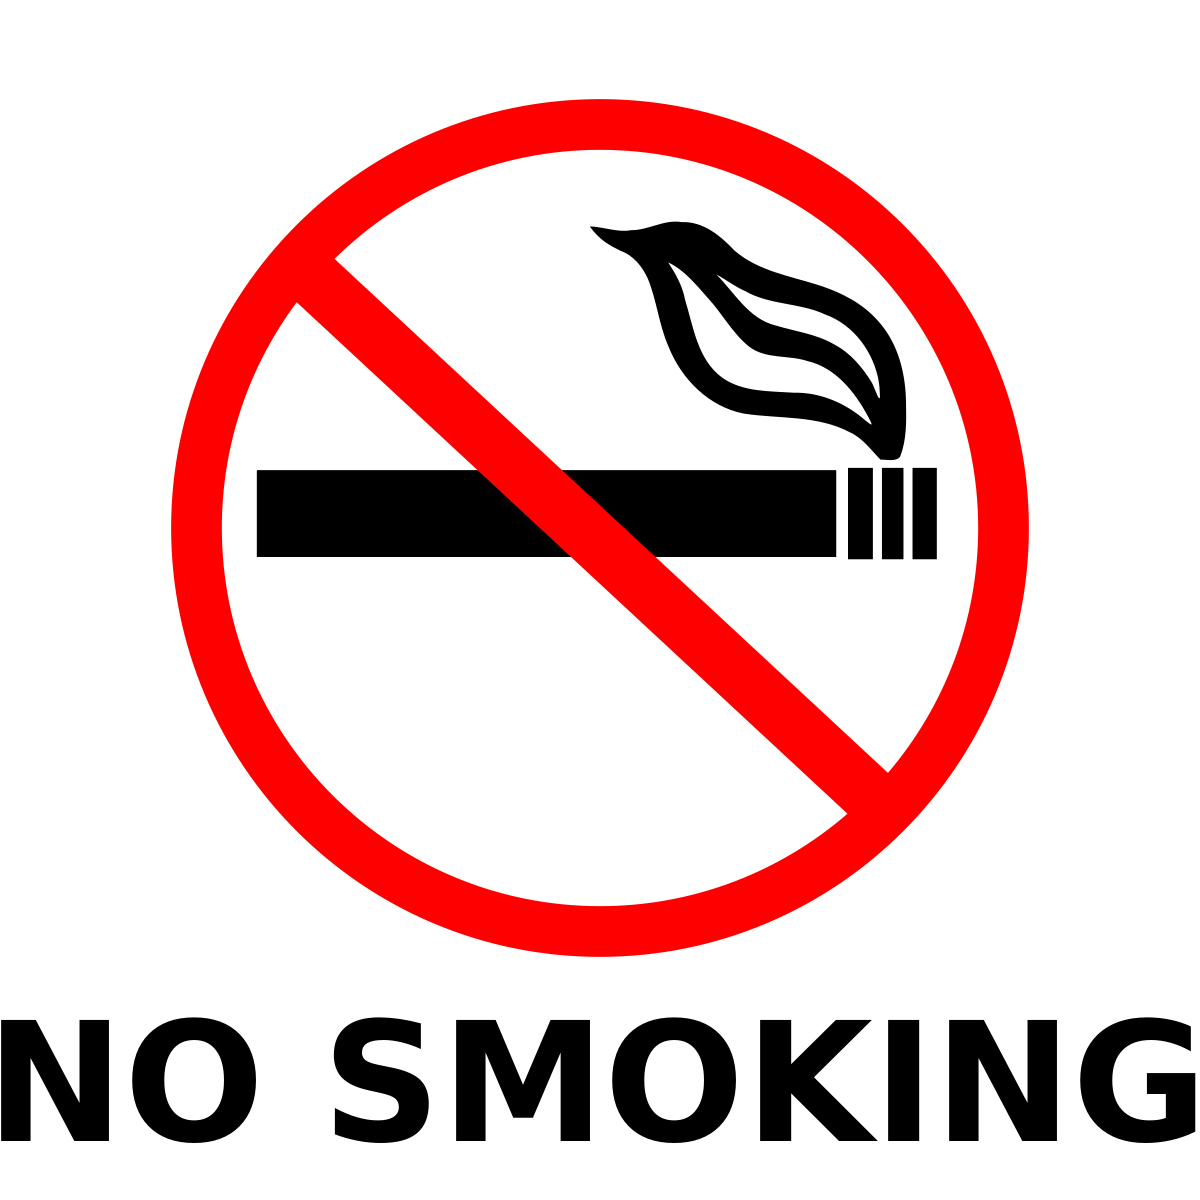 बालेनको अर्को एक्सन-काठमाडौंमा असोज १ गतेदेखी सार्वजनिक स्थलमा धूम्रपान निषेध